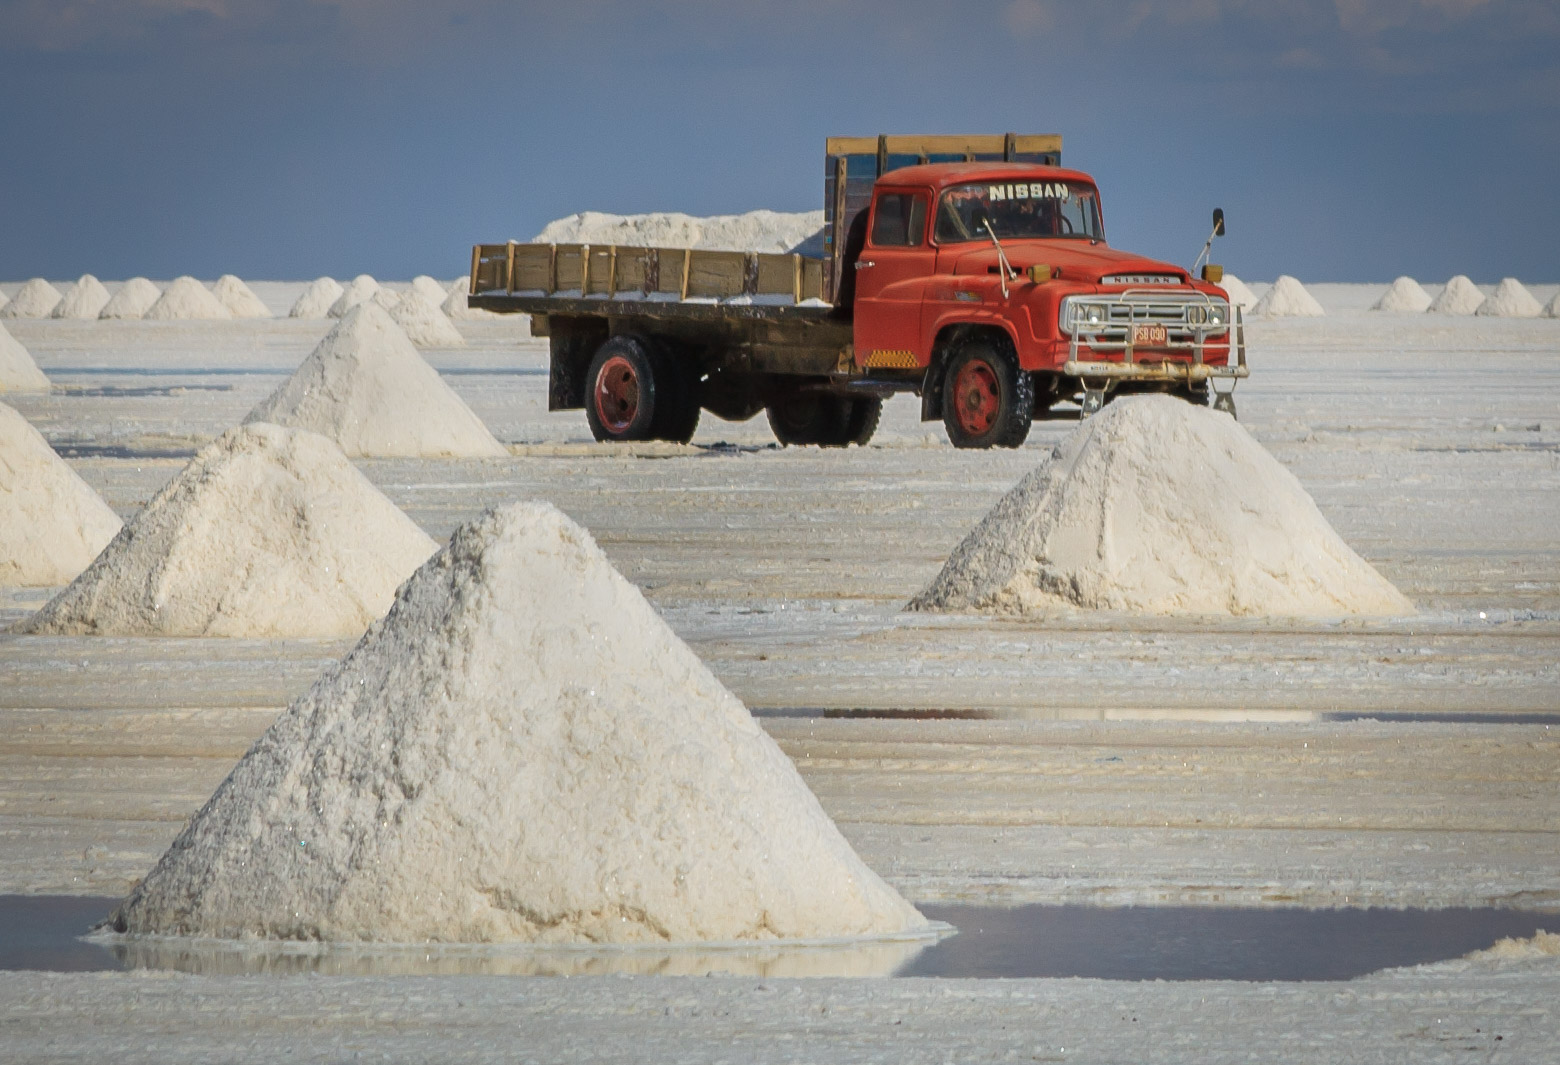 Salt "farming" in Colchani, Salar de Uyuni